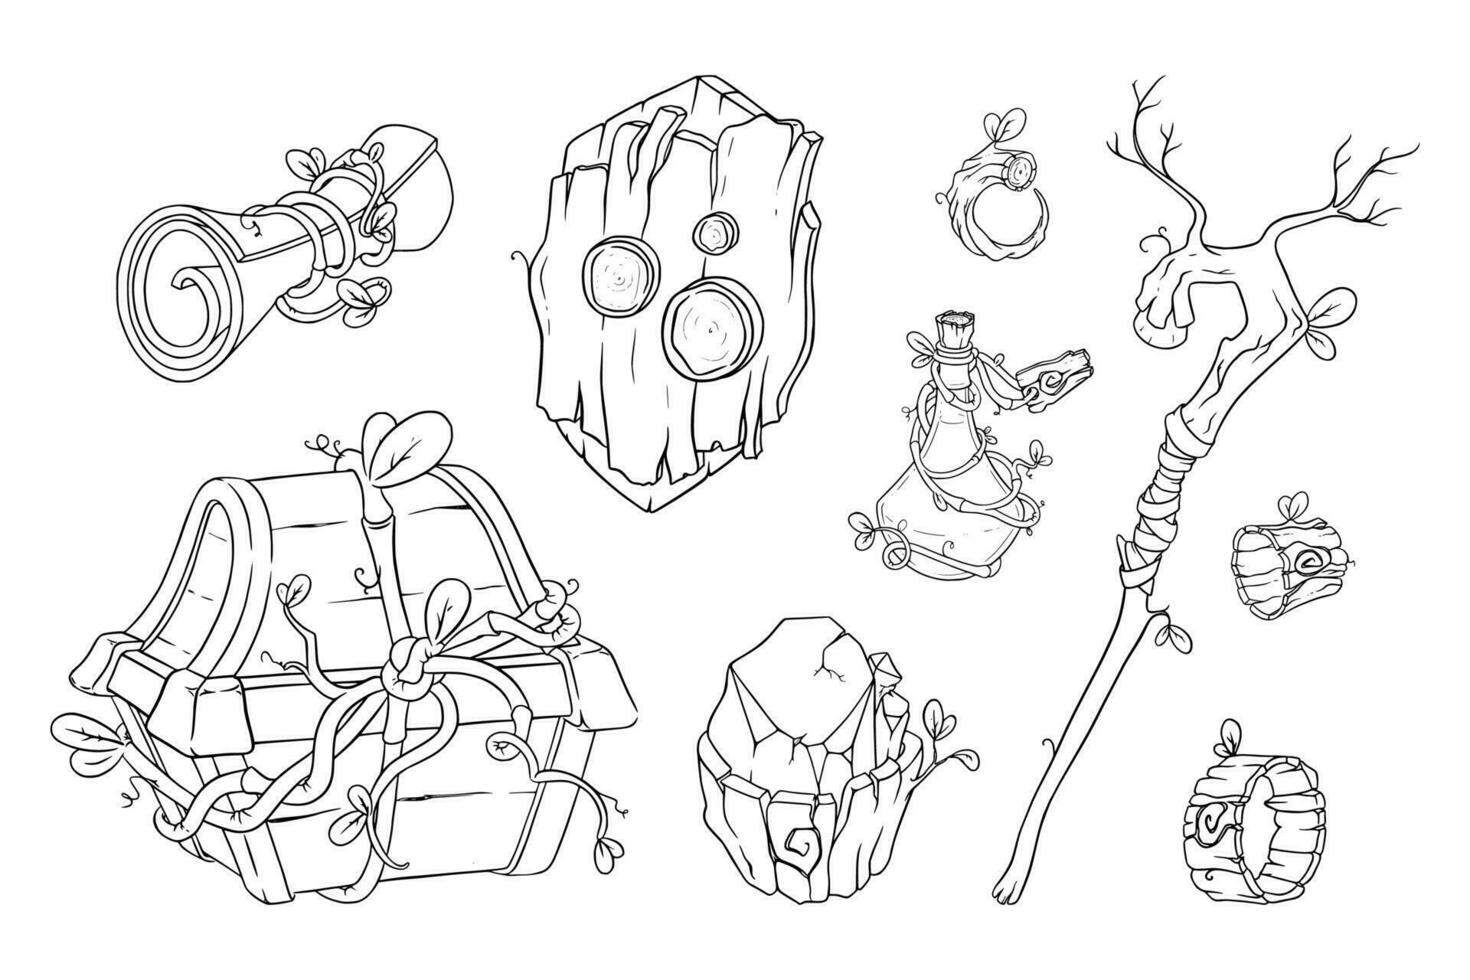 magie spel items met toverstok, borst, toverdrank en andere rekwisieten. schetsen van druïde spel voorwerpen. vector illustratie